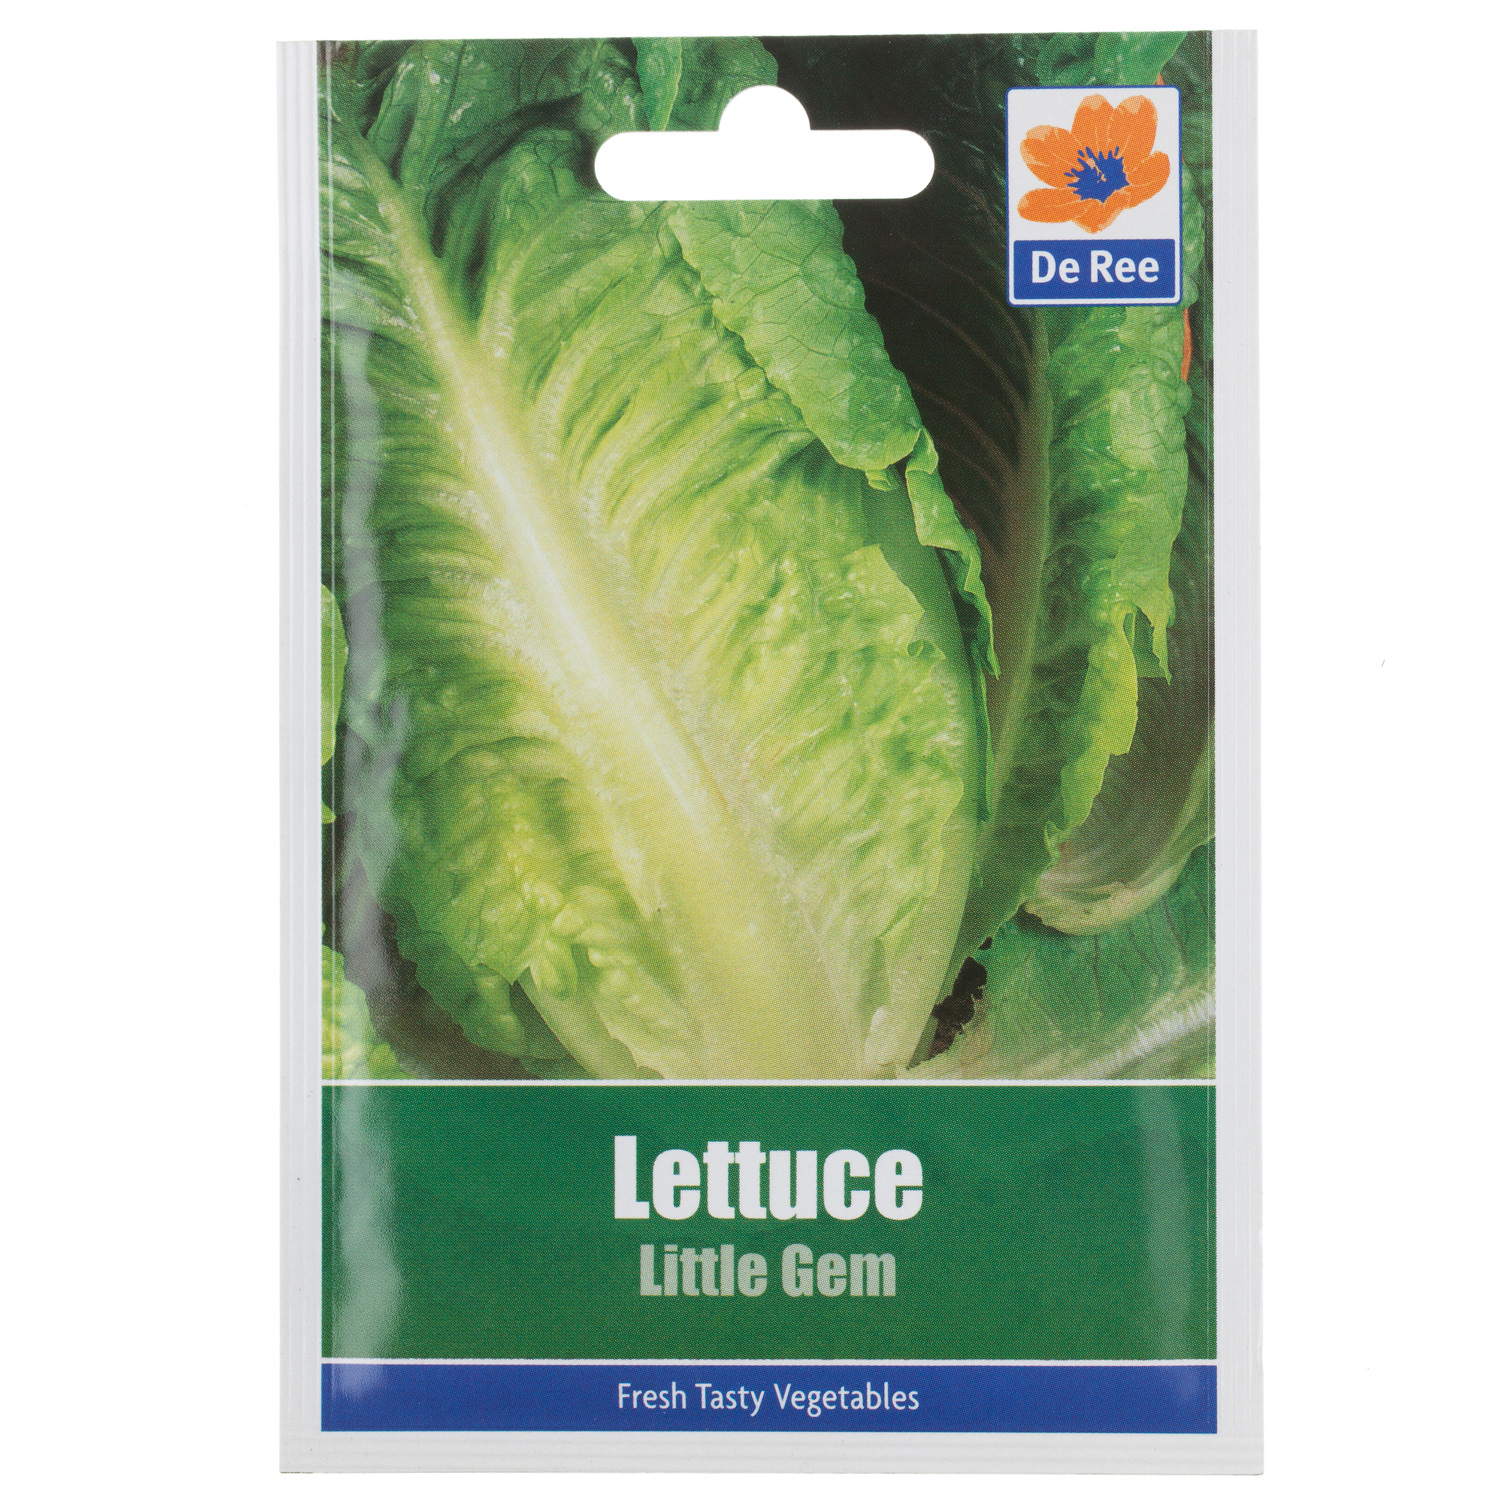 Little Gem Lettuce Seed Packet Image